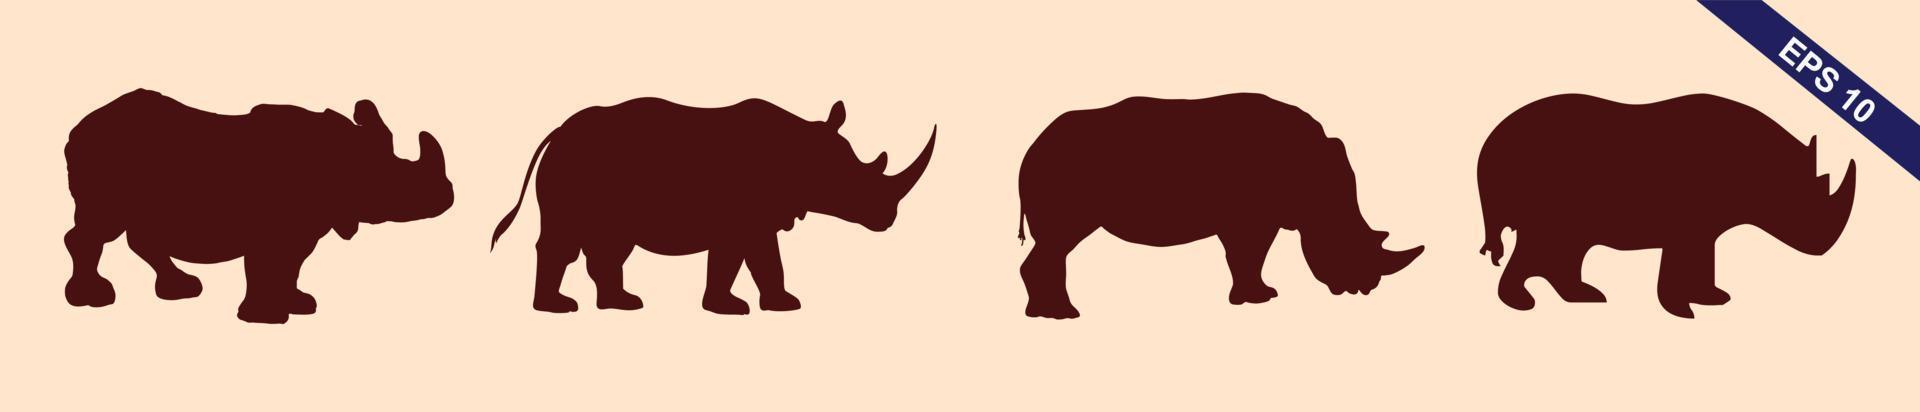 conjunto de rinoceronte africano em poses diferentes design de animais dos desenhos animados ilustração vetorial plana isolada em fundo cinza vetor